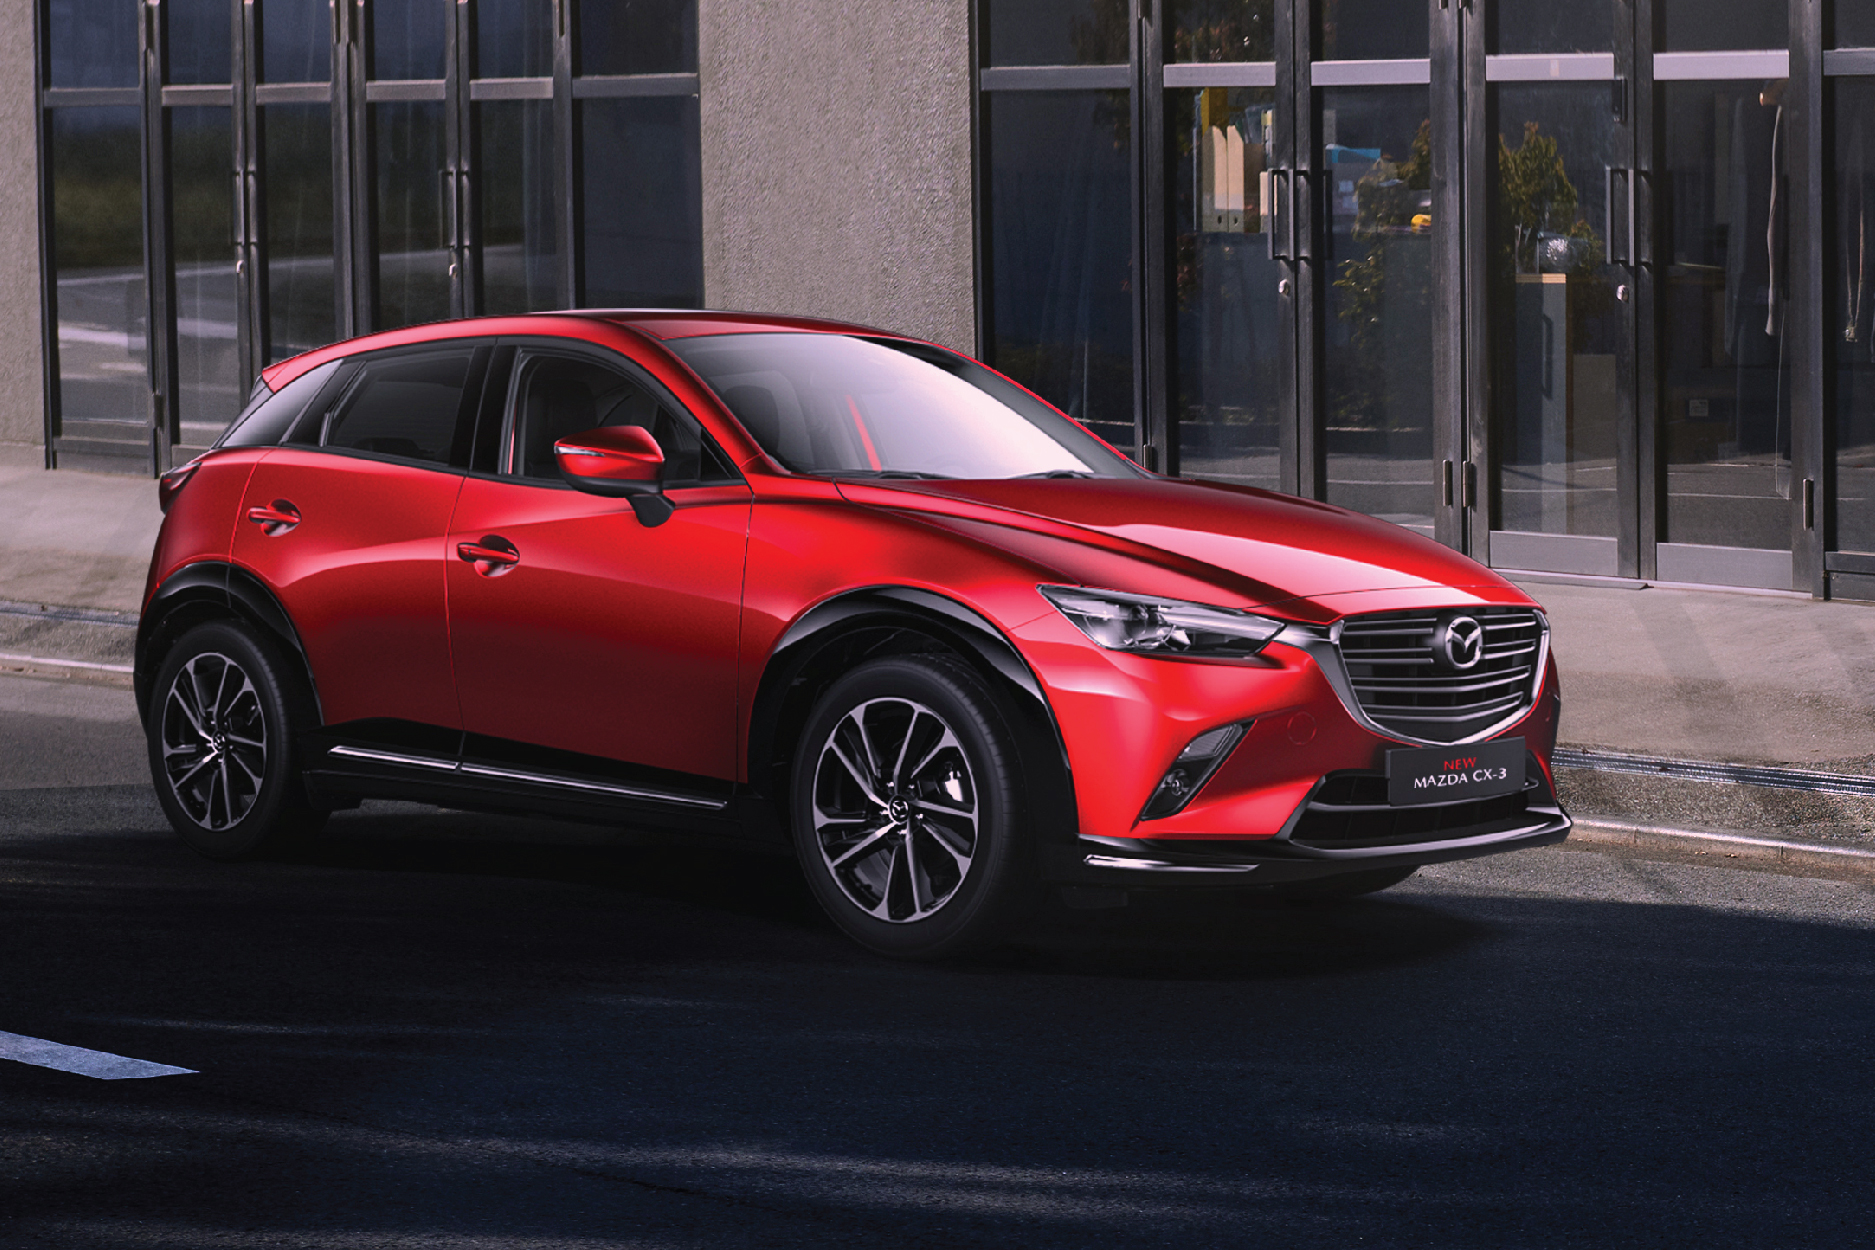 New Mazda CX-3 giải quyết "bài toán" chọn SUV đô thị tiện nghi, an toàn- Ảnh 1.